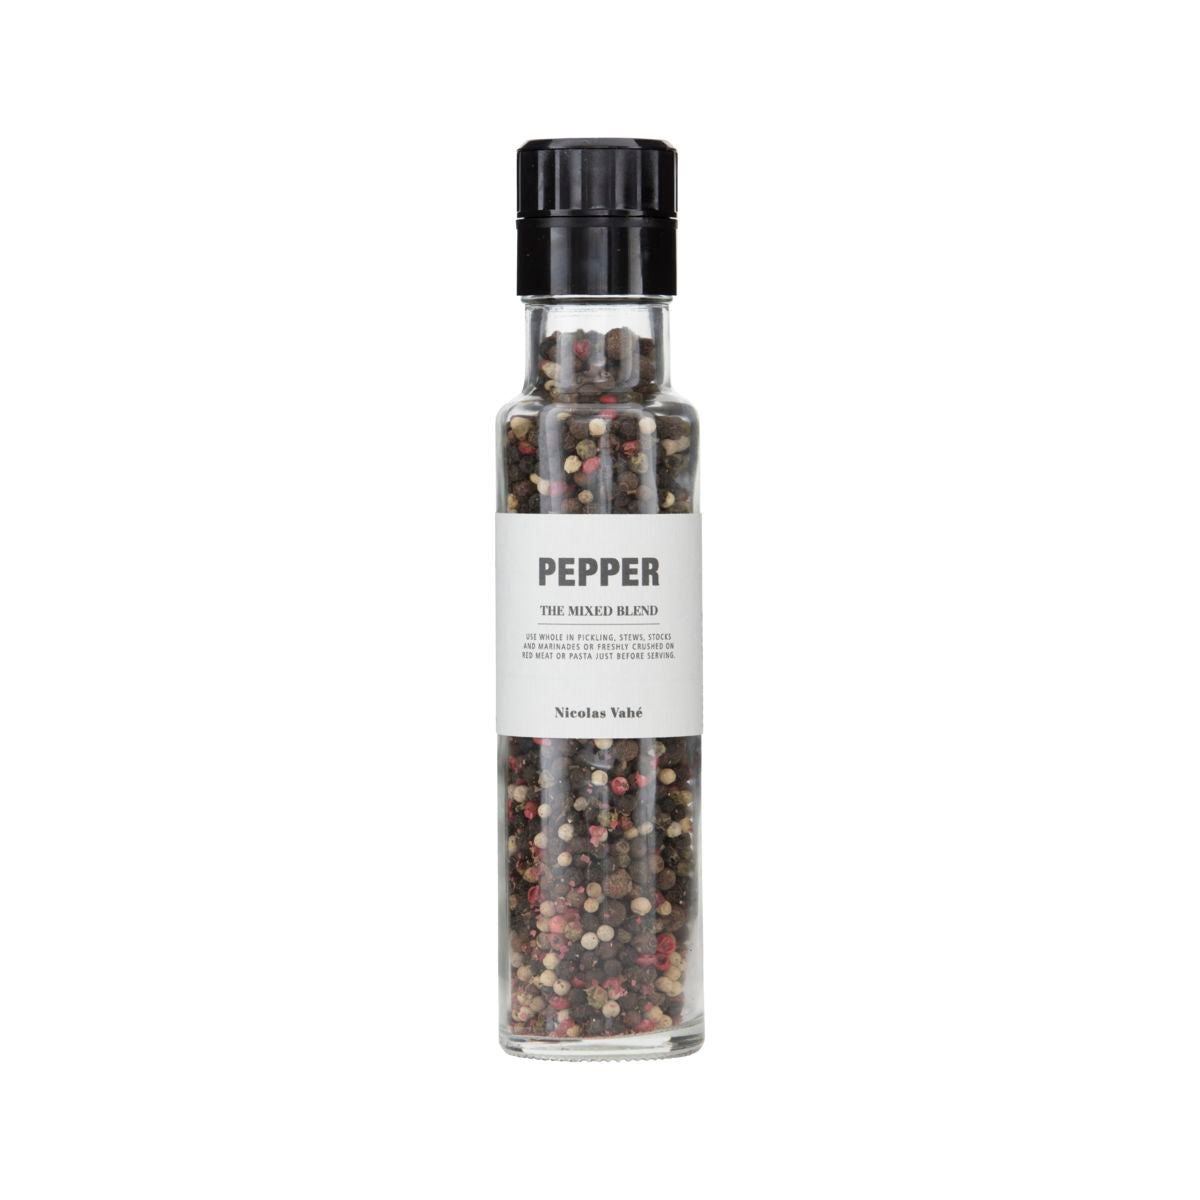 Pepper, the mixed blend